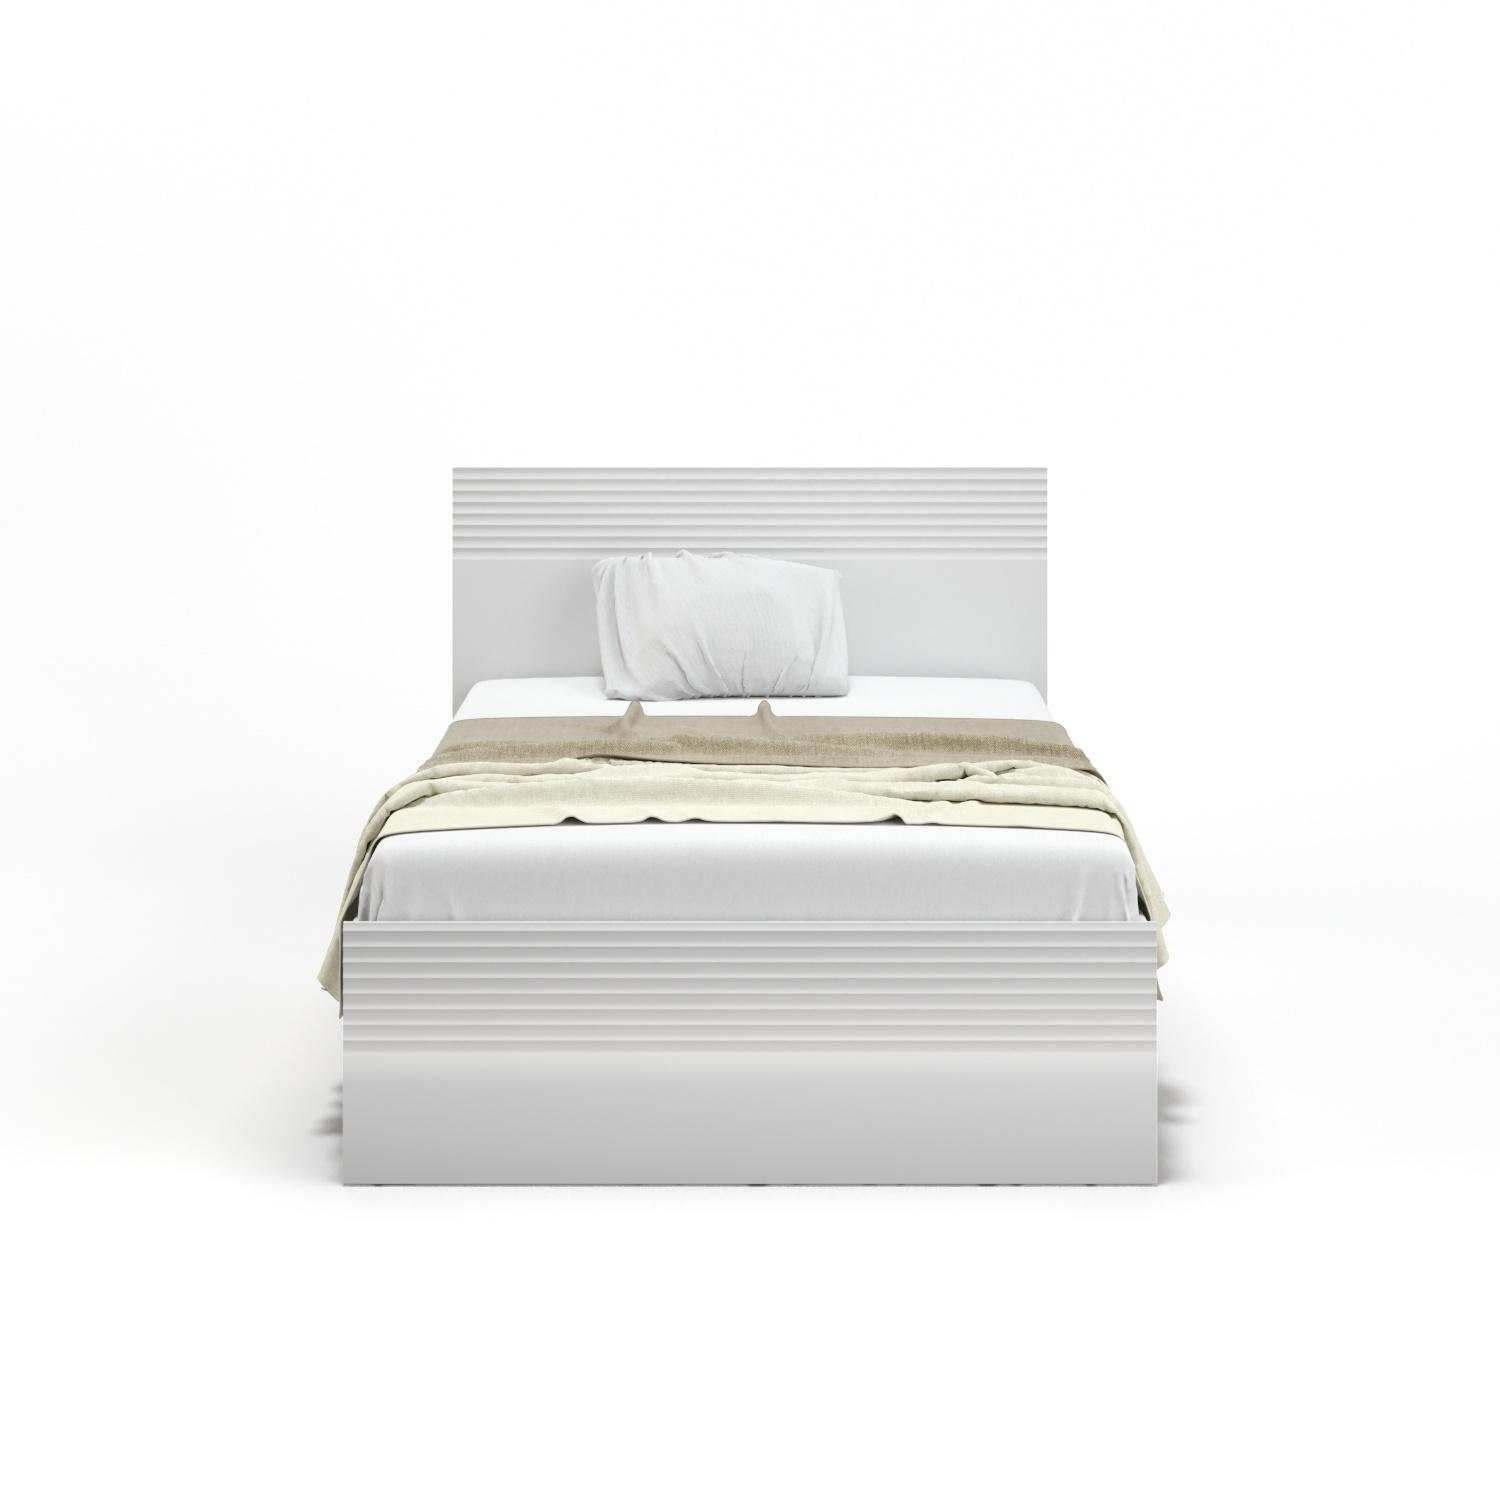 Белые глянцевые кровати от производителя